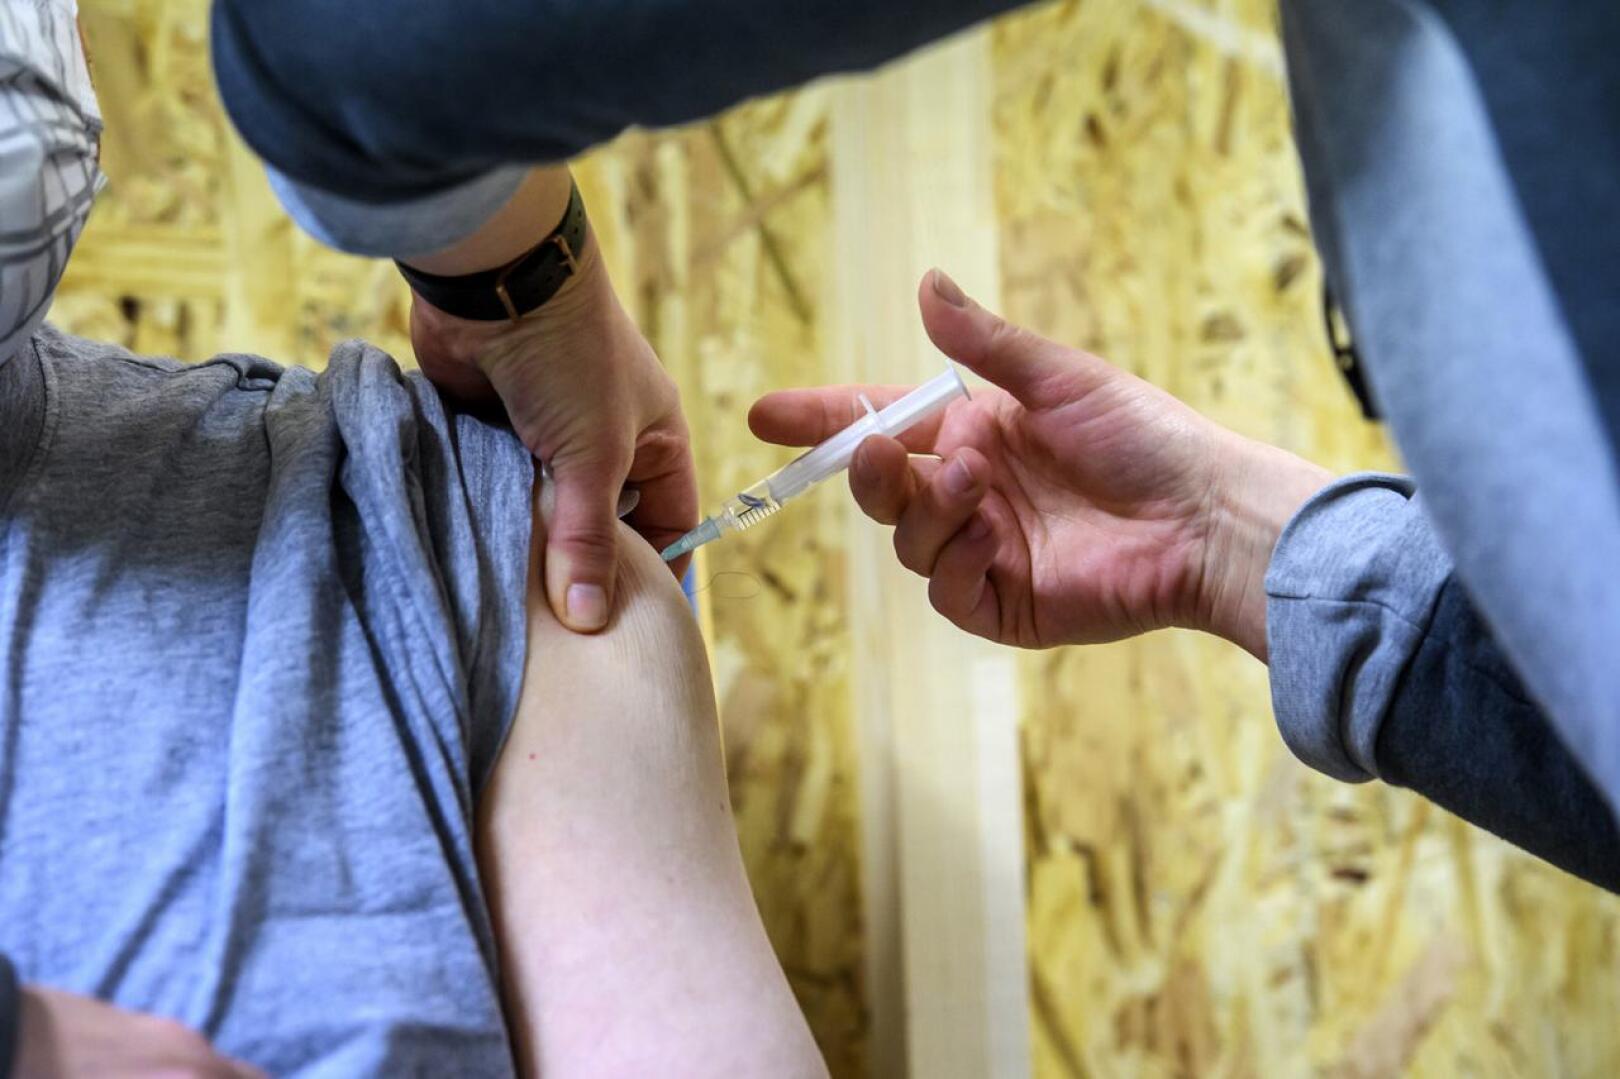 Riskiryhmiin kuuluvia lapsia on rokotettu Helmessä jo jouluviikolta alkaen, mutta nyt rokotetta tarjotaan myös perusterveille 5-11-vuotiaille lapsille.